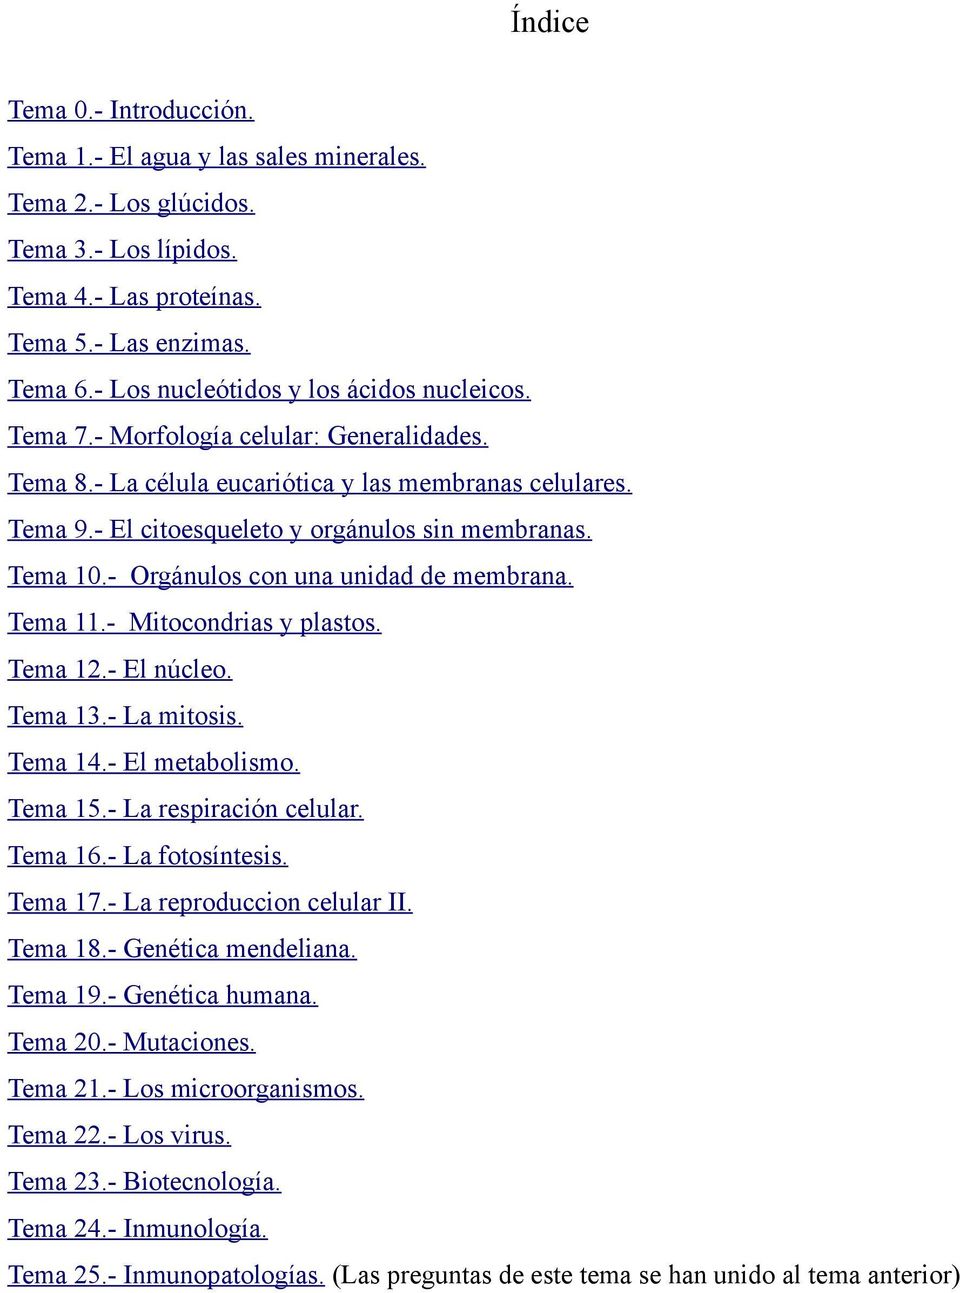 Tema 10.- Orgánulos con una unidad de membrana. Tema 11.- Mitocondrias y plastos. Tema 12.- El núcleo. Tema 13.- La mitosis. Tema 14.- El metabolismo. Tema 15.- La respiración celular. Tema 16.